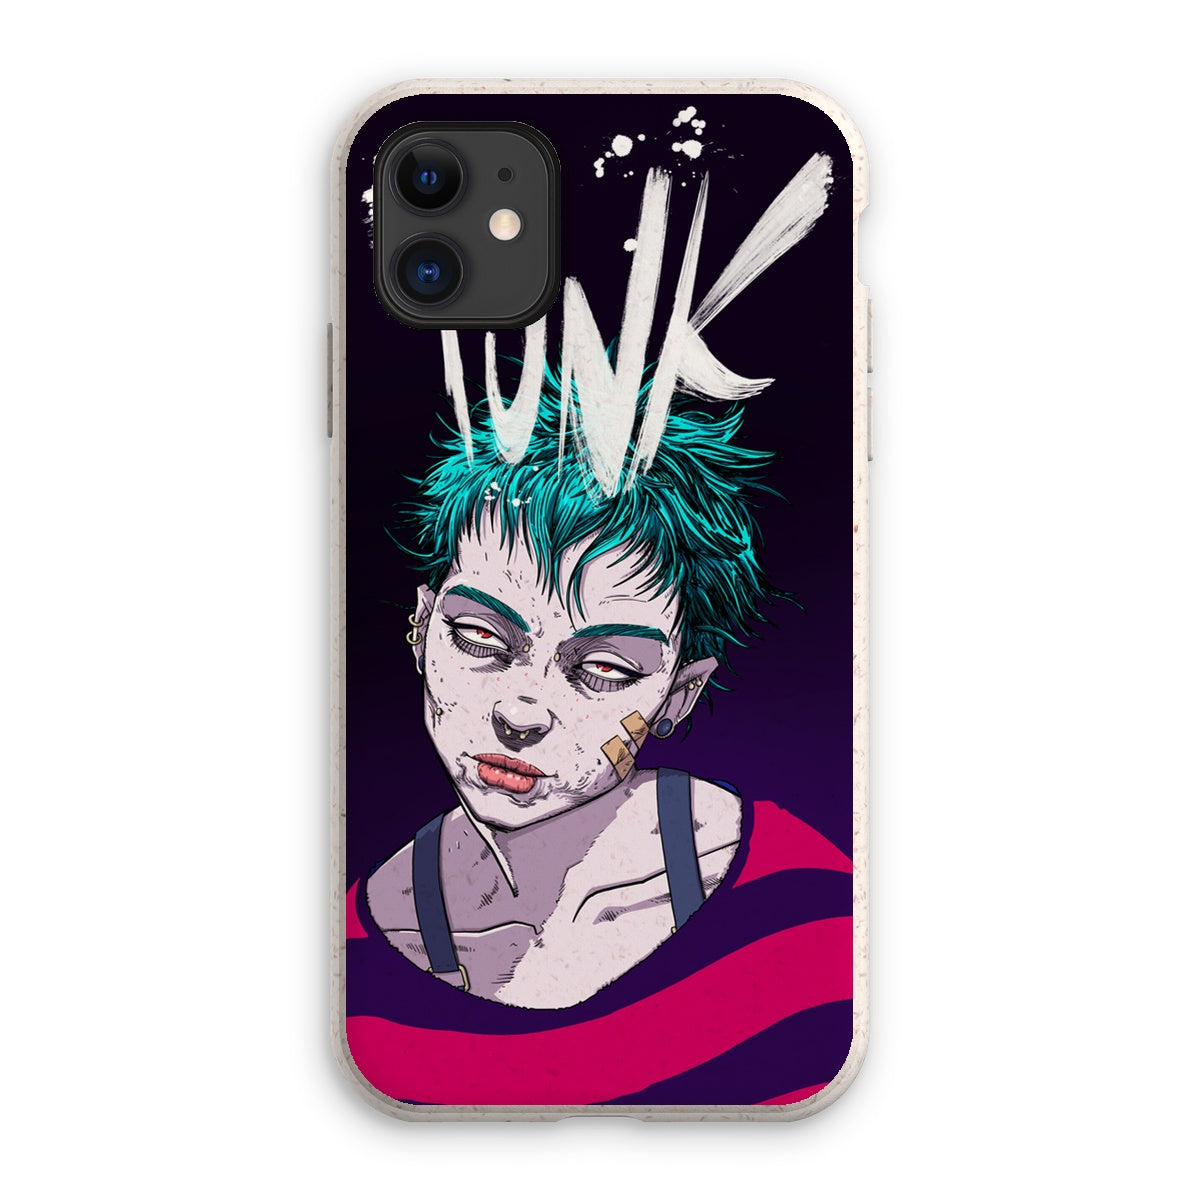 Unique and cool Gorillaz-style punk rock phone case illustration